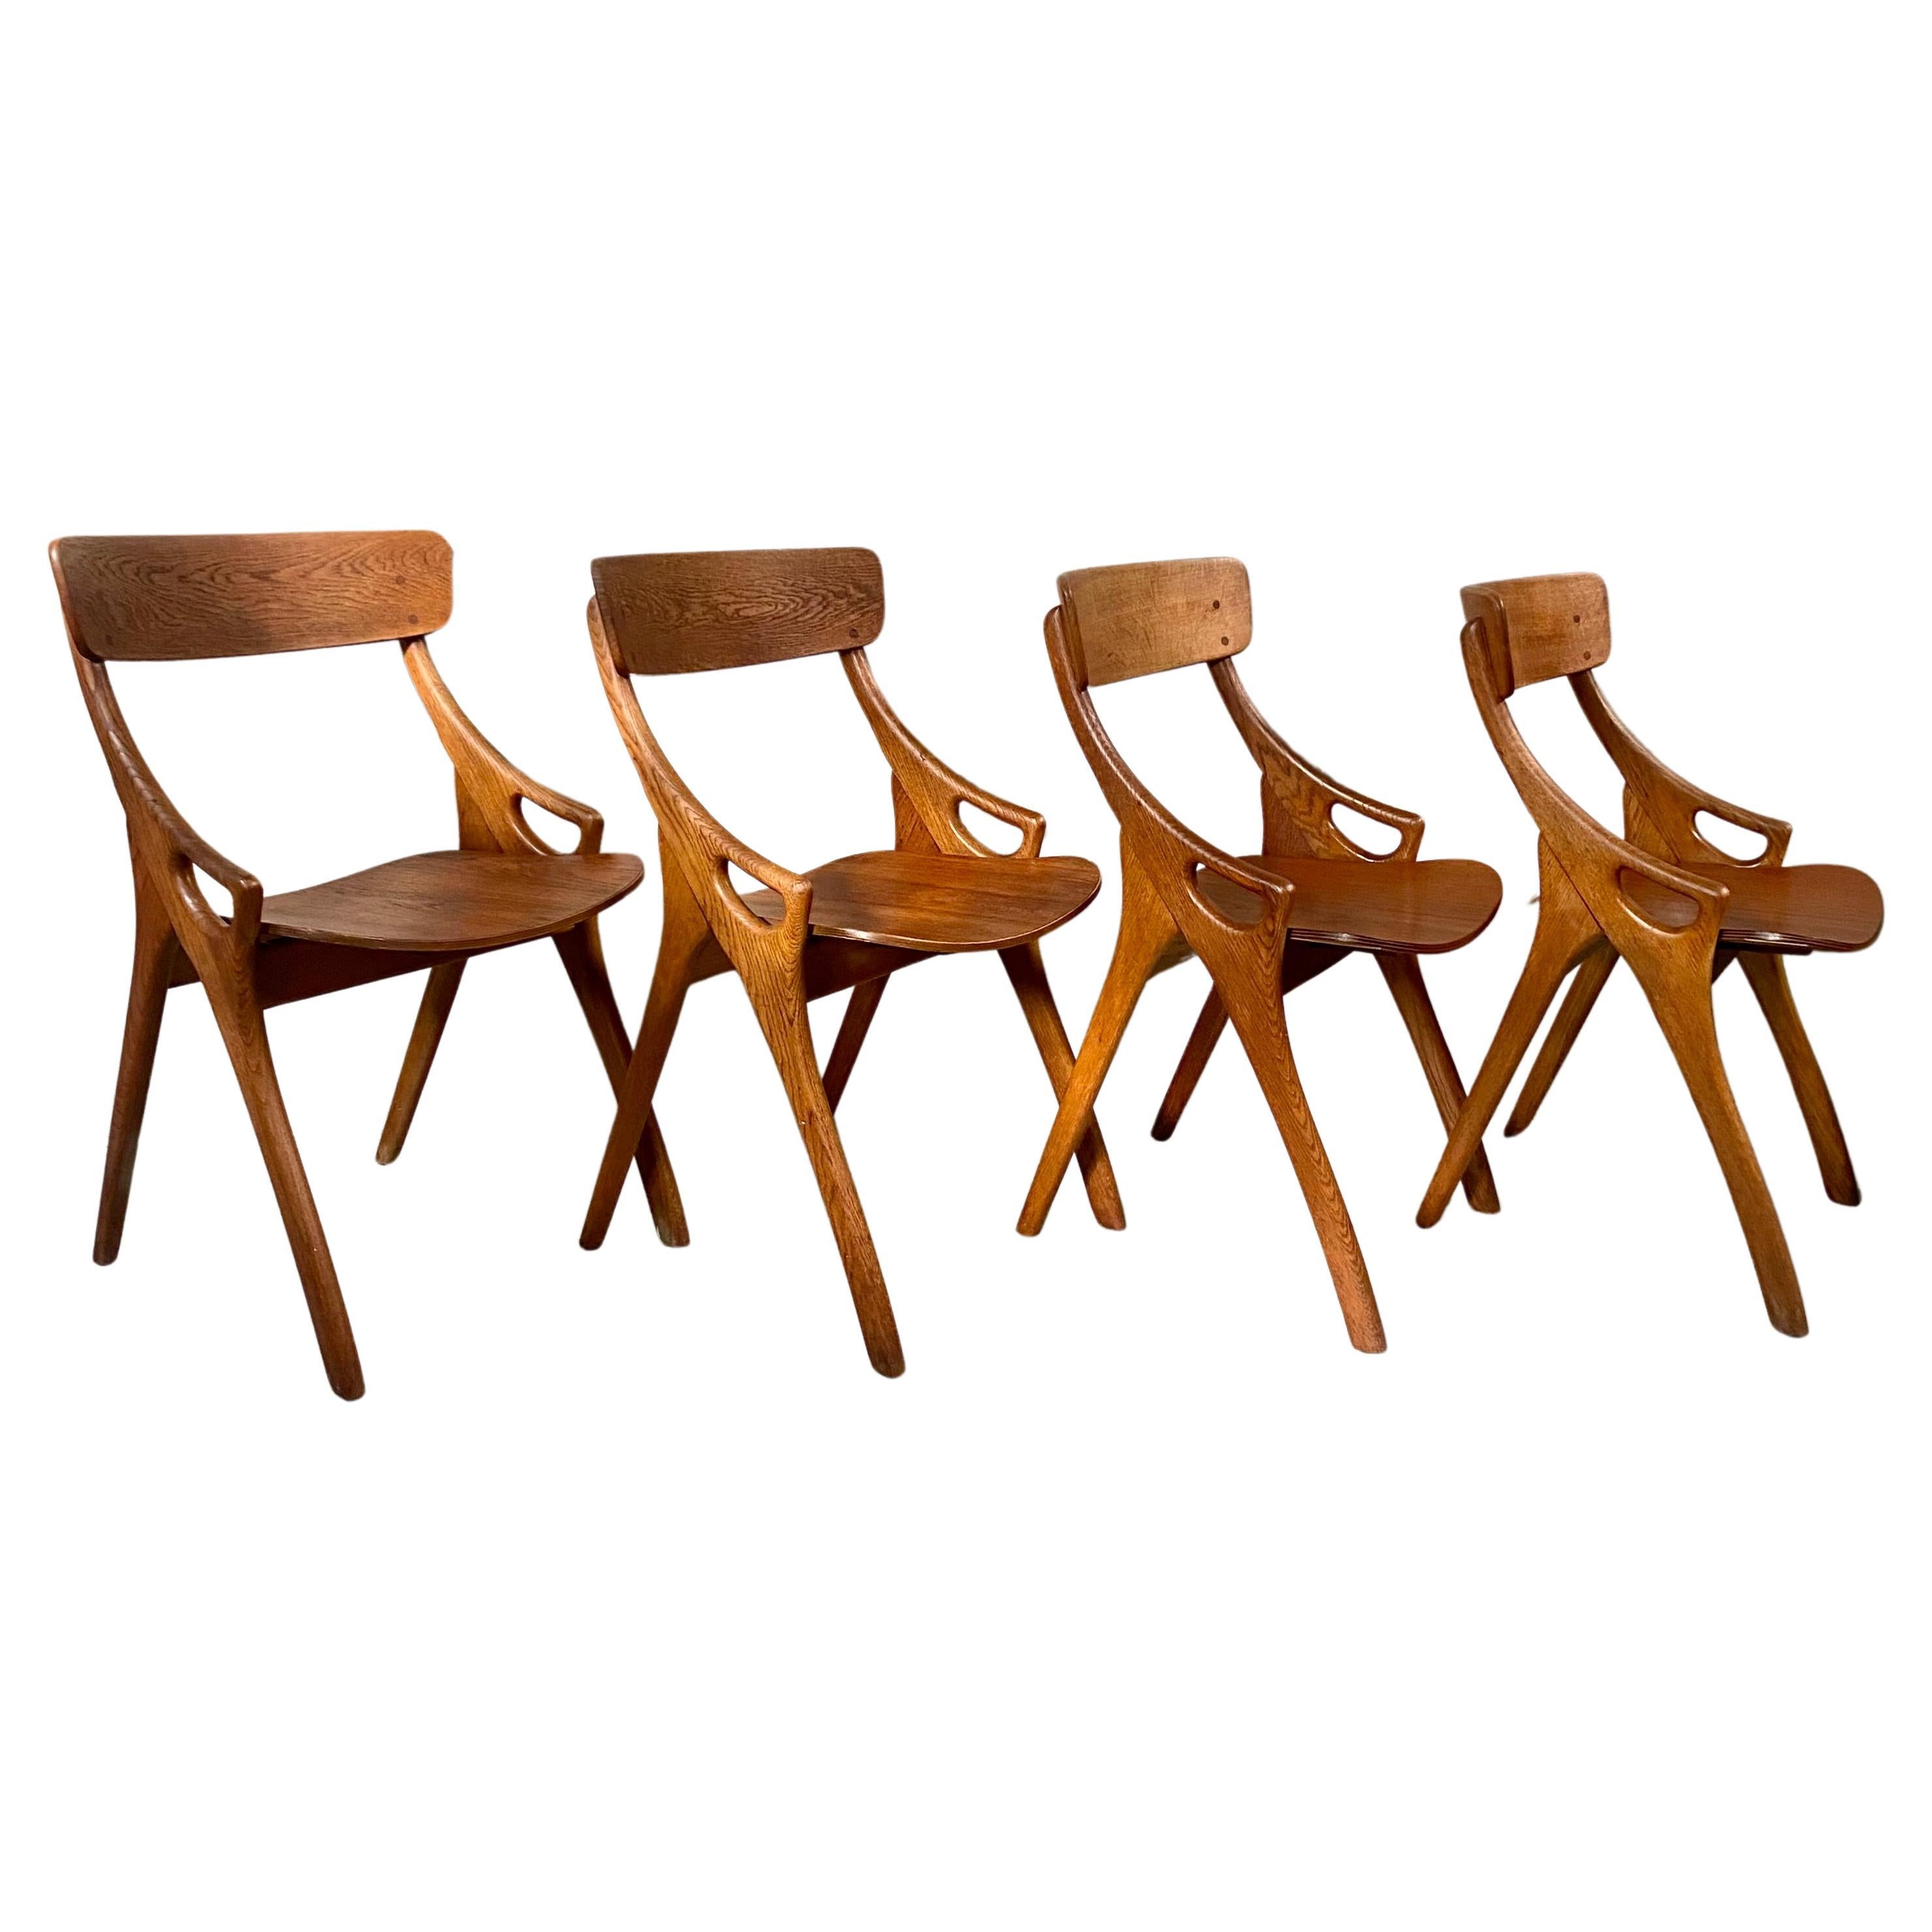 4 Rustic Oak Arne Hovmand Olsen Dining Chairs for Mogens Kold Mobelfabrik 1950 For Sale